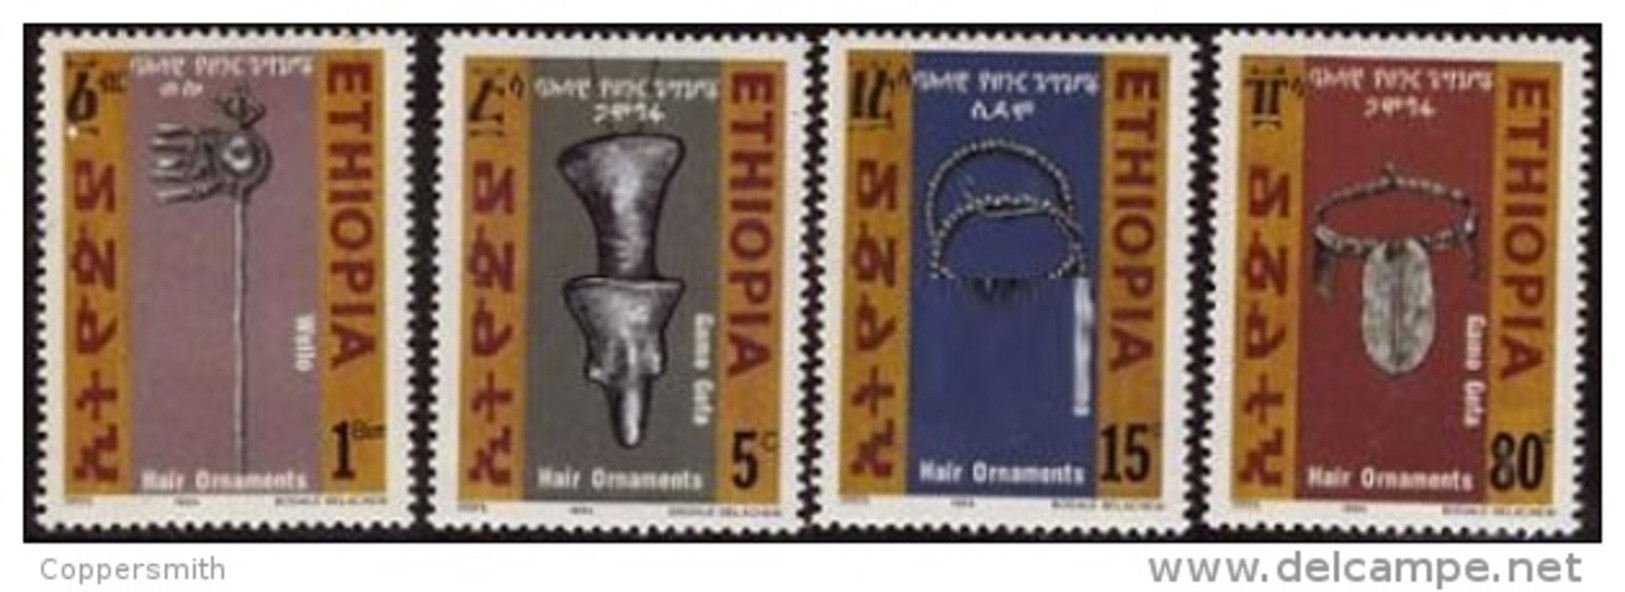 (357) Ethiopia / Ethiopie  Hair Styling / Jewellery / 1994 ** / Mnh  Michel 1482-85 - Äthiopien